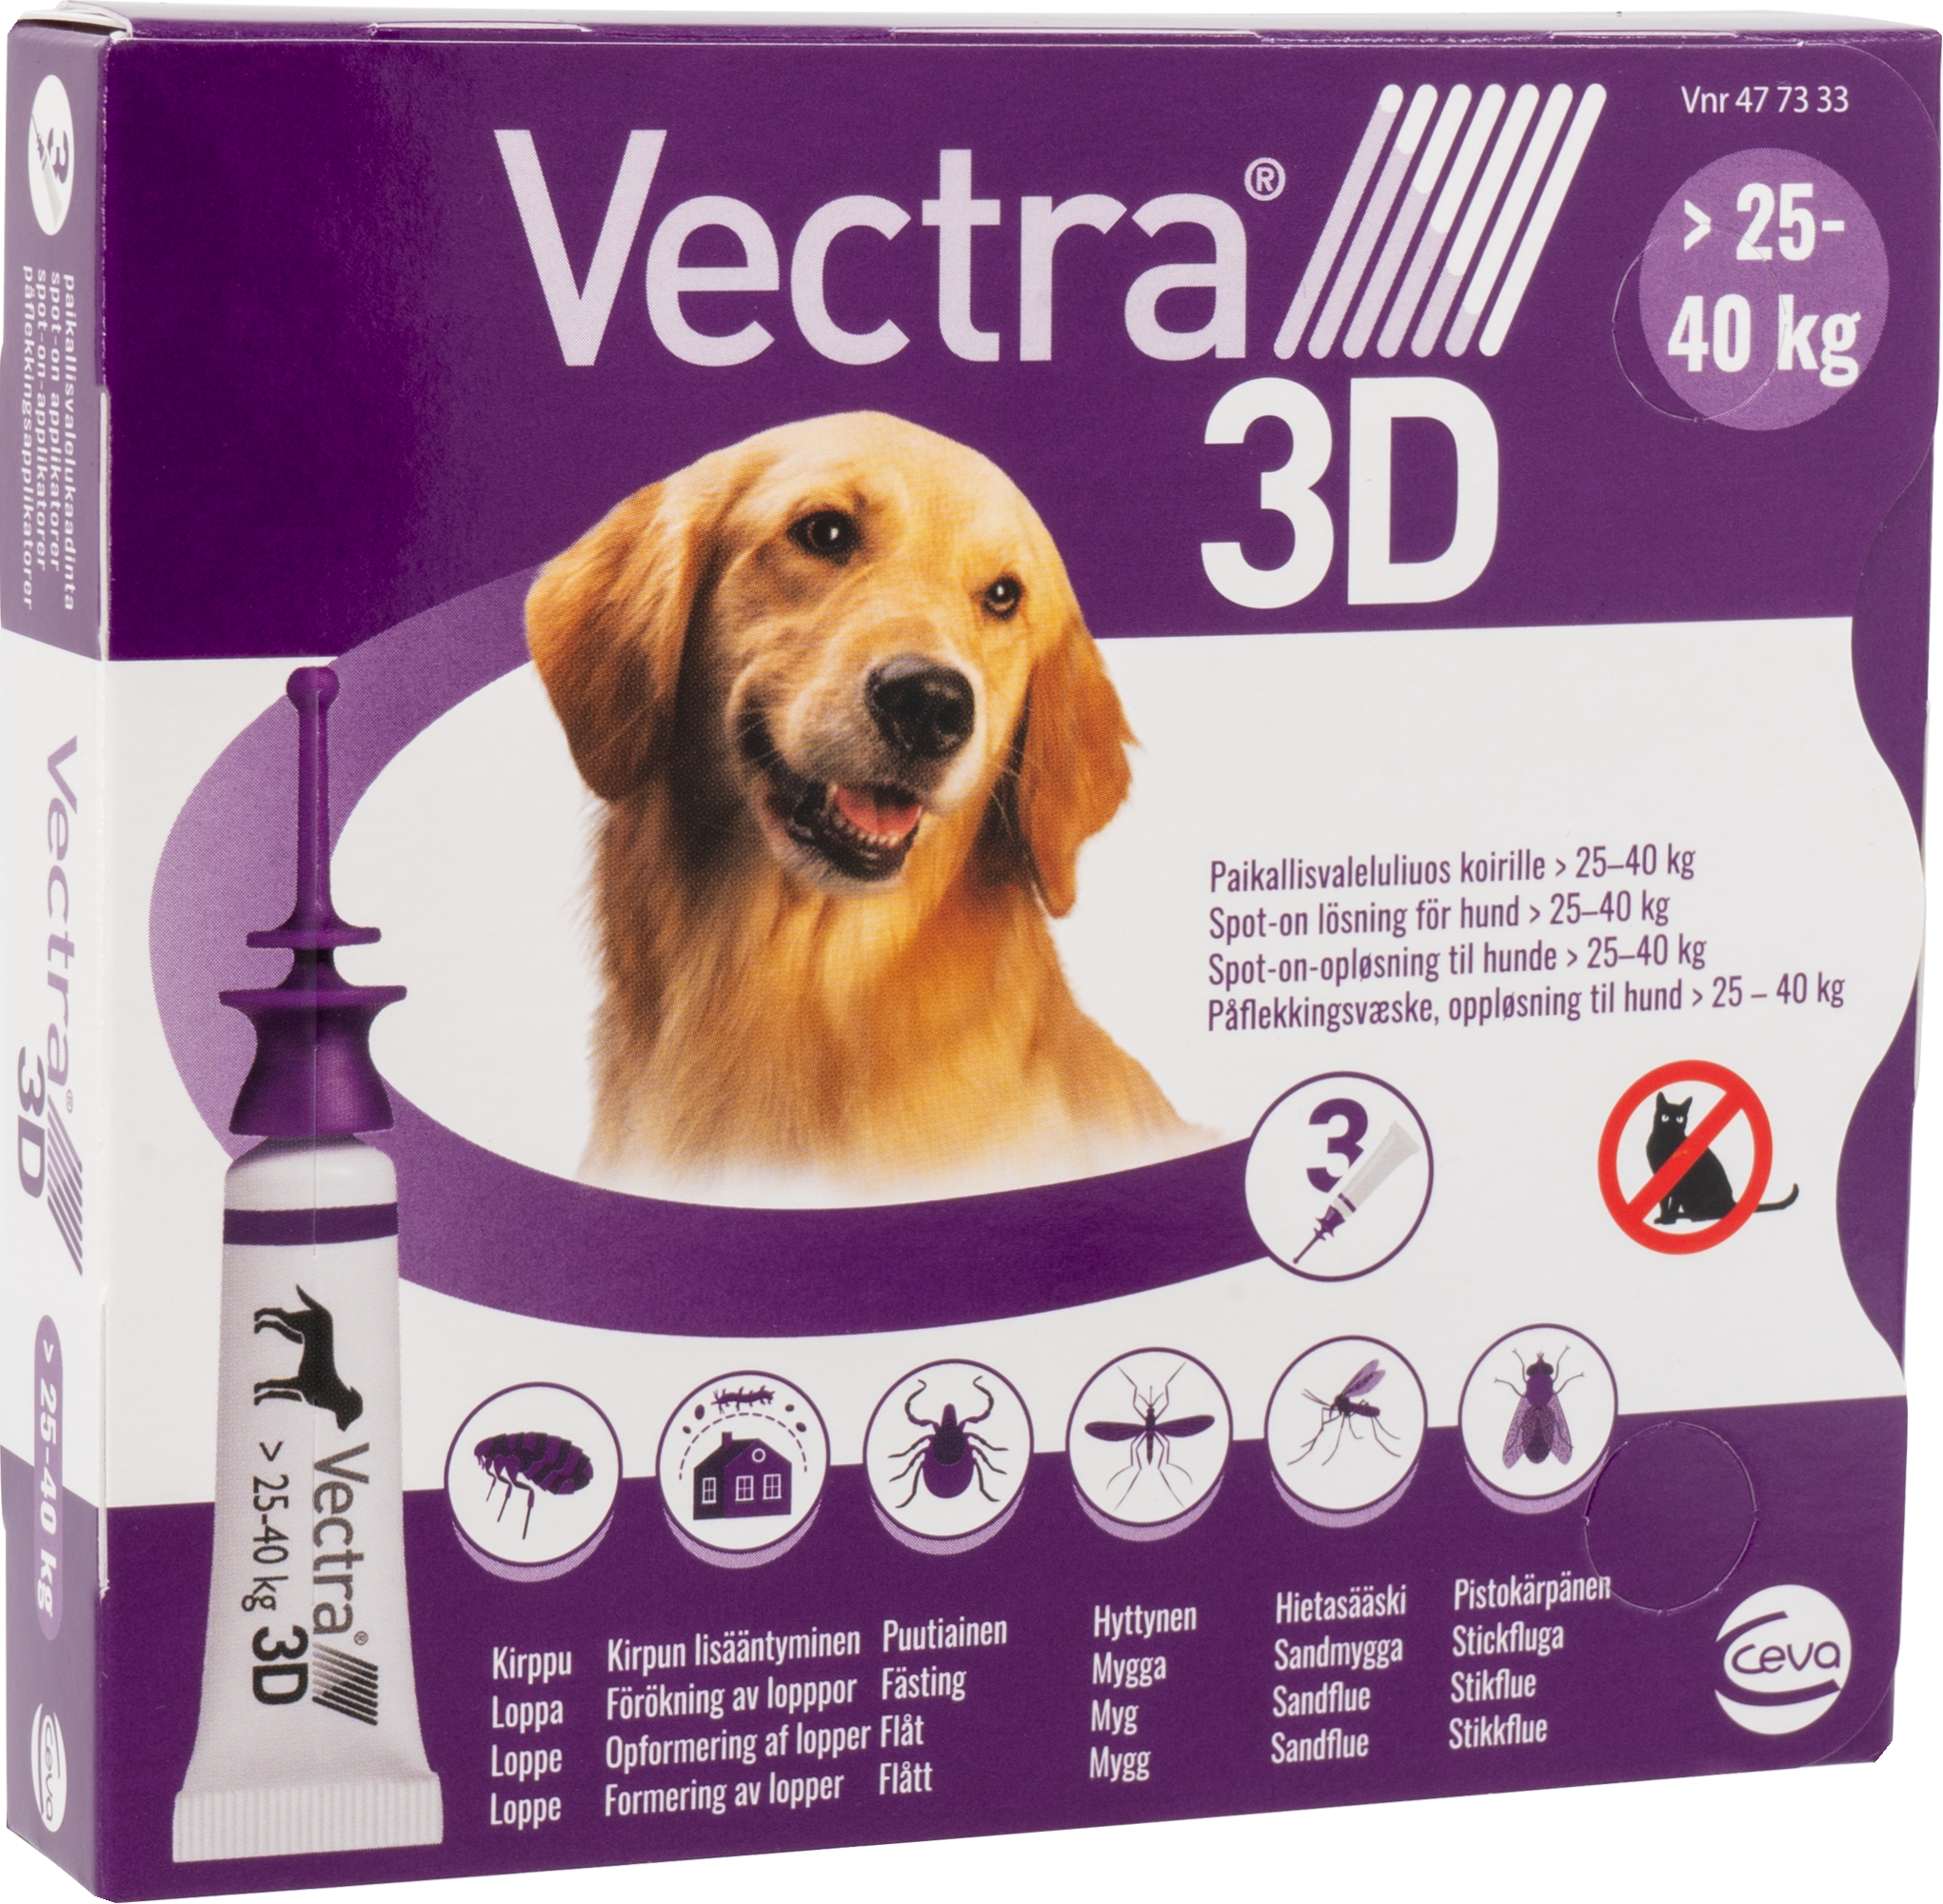 Vectra 3D - Spot-on-solution (dogs) 25-40 kg 3pk - (477333) - Kjæledyr og utstyr